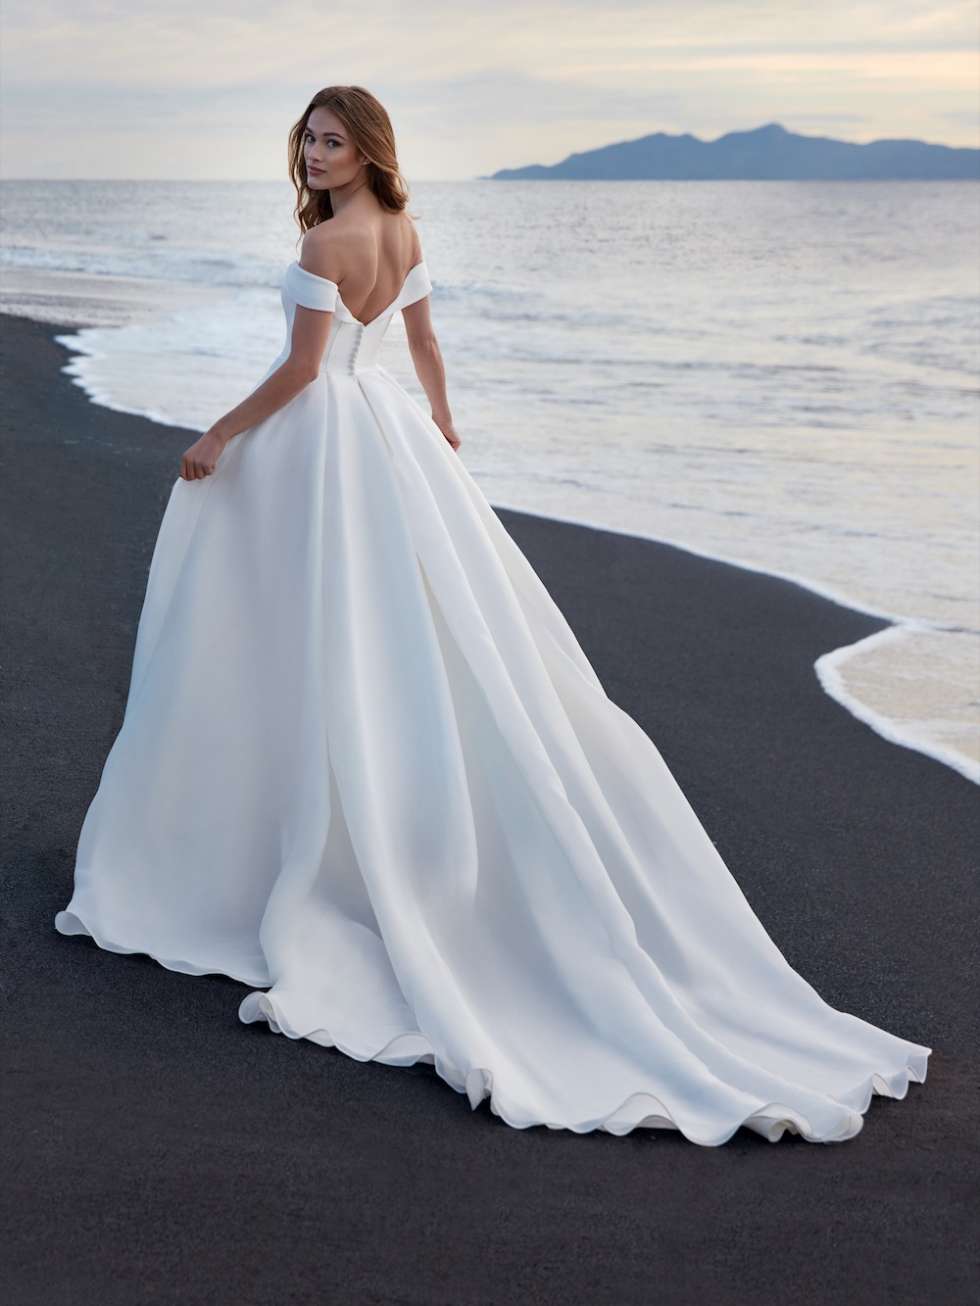 The Nicole Milano 2022 Wedding Dresses